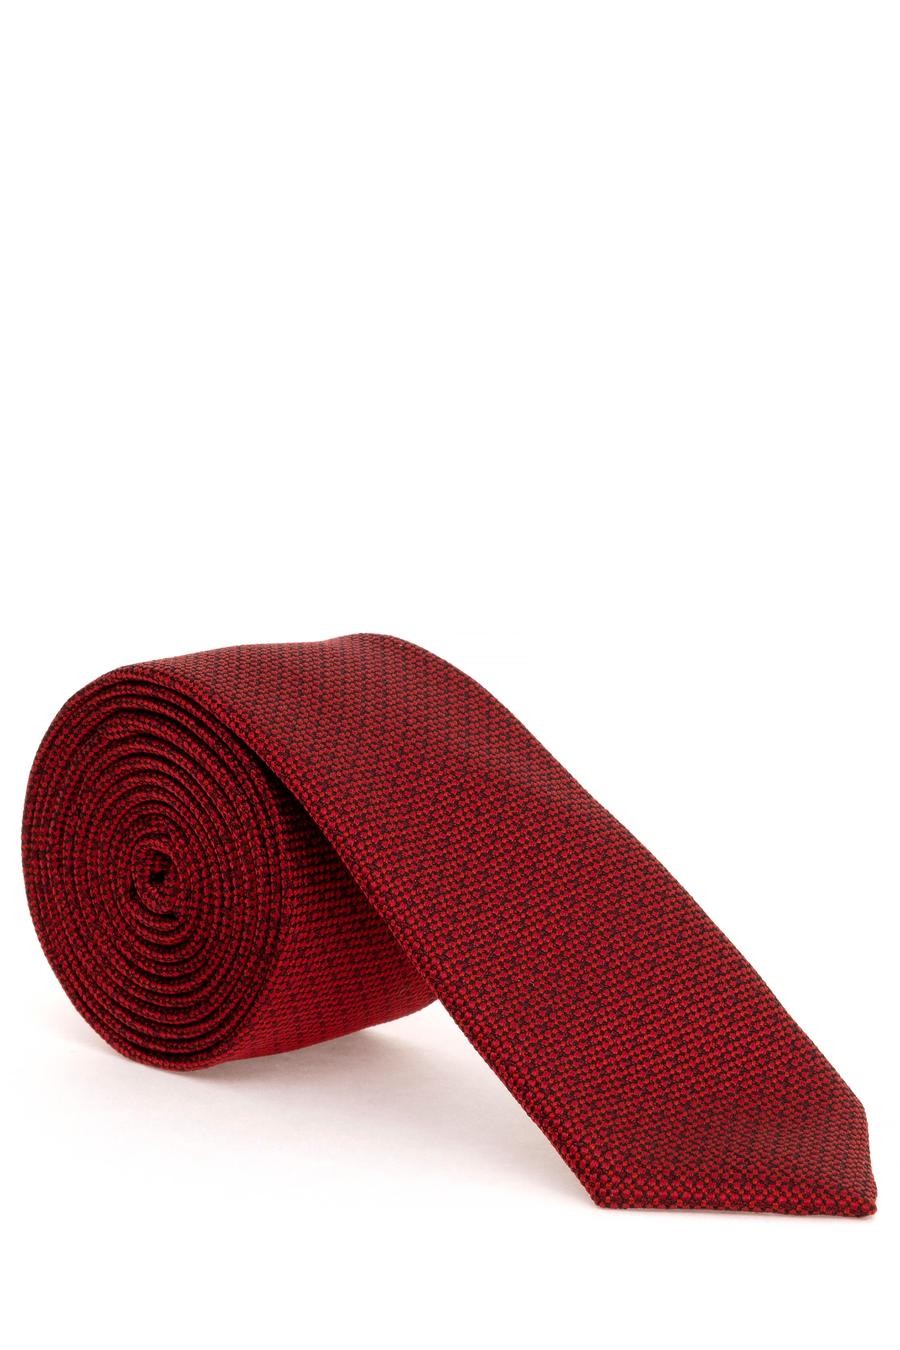 ست دستمال جیب و کراوات  قرمز  استاندارد  مردانه  پیرکاردین